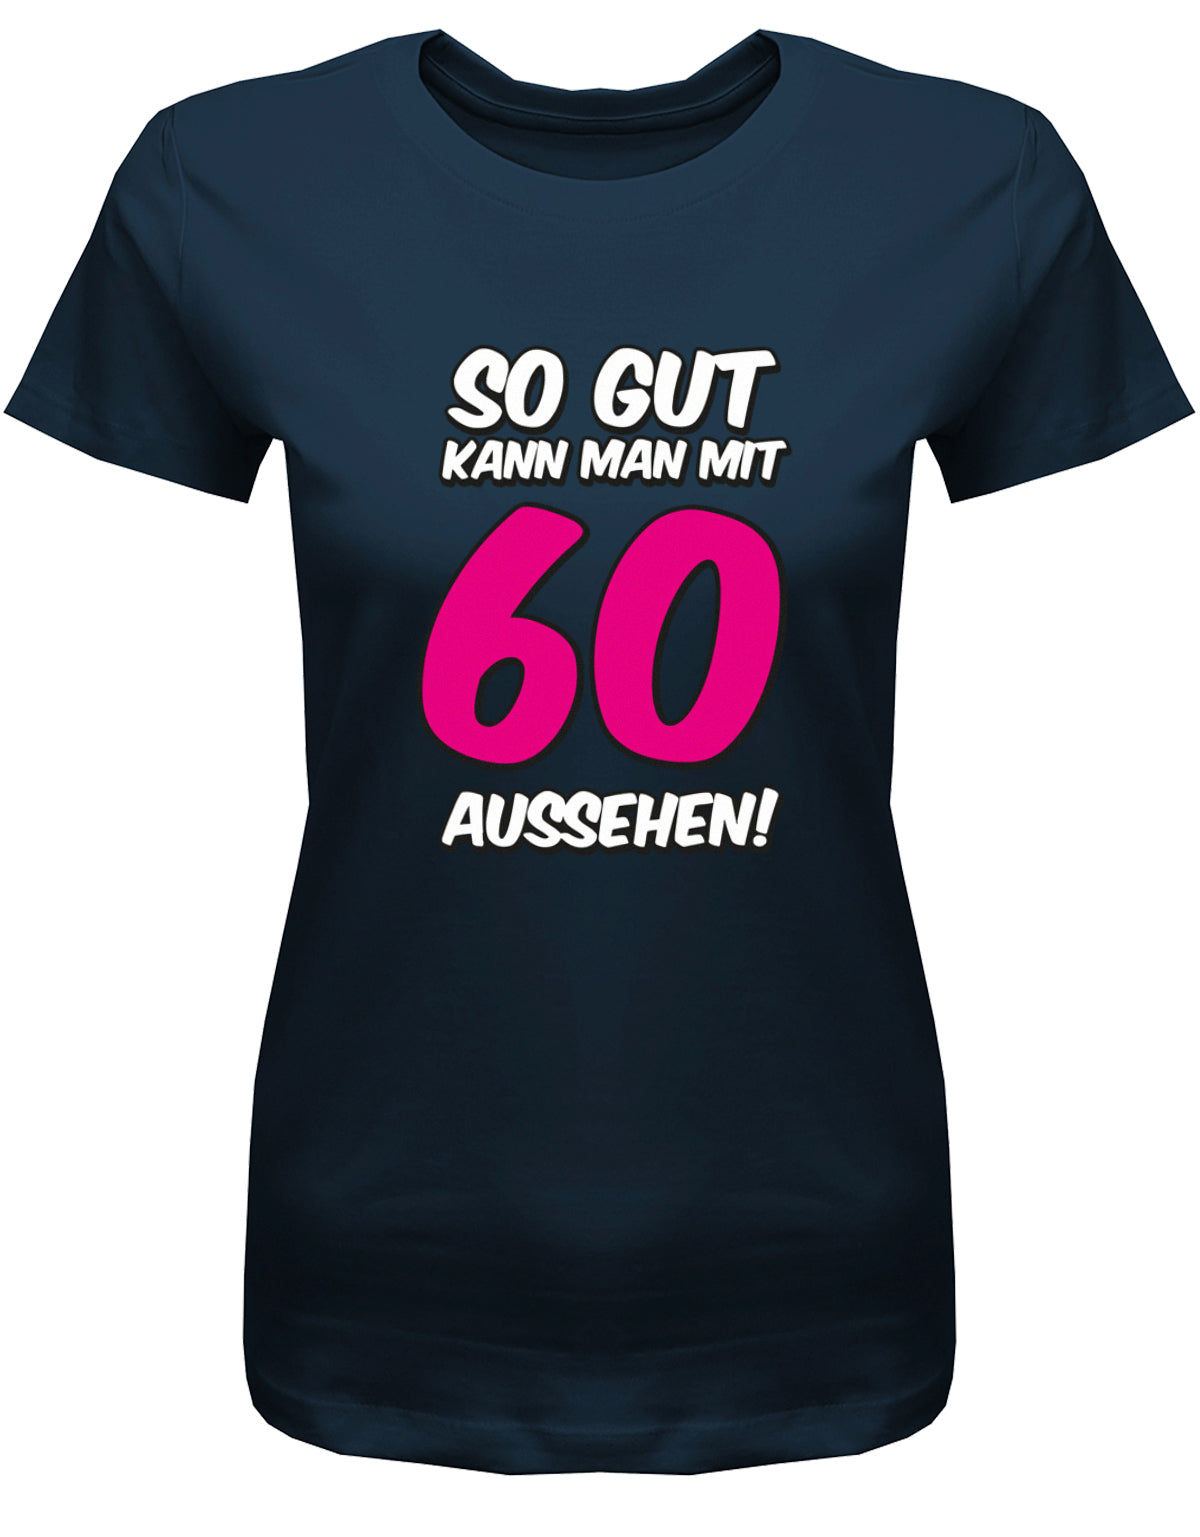 Lustiges T-Shirt zum 60 Geburtstag für die Frau Bedruckt mit So gut kann man mit 60 aussehen. Große 60 in Pink. Navy